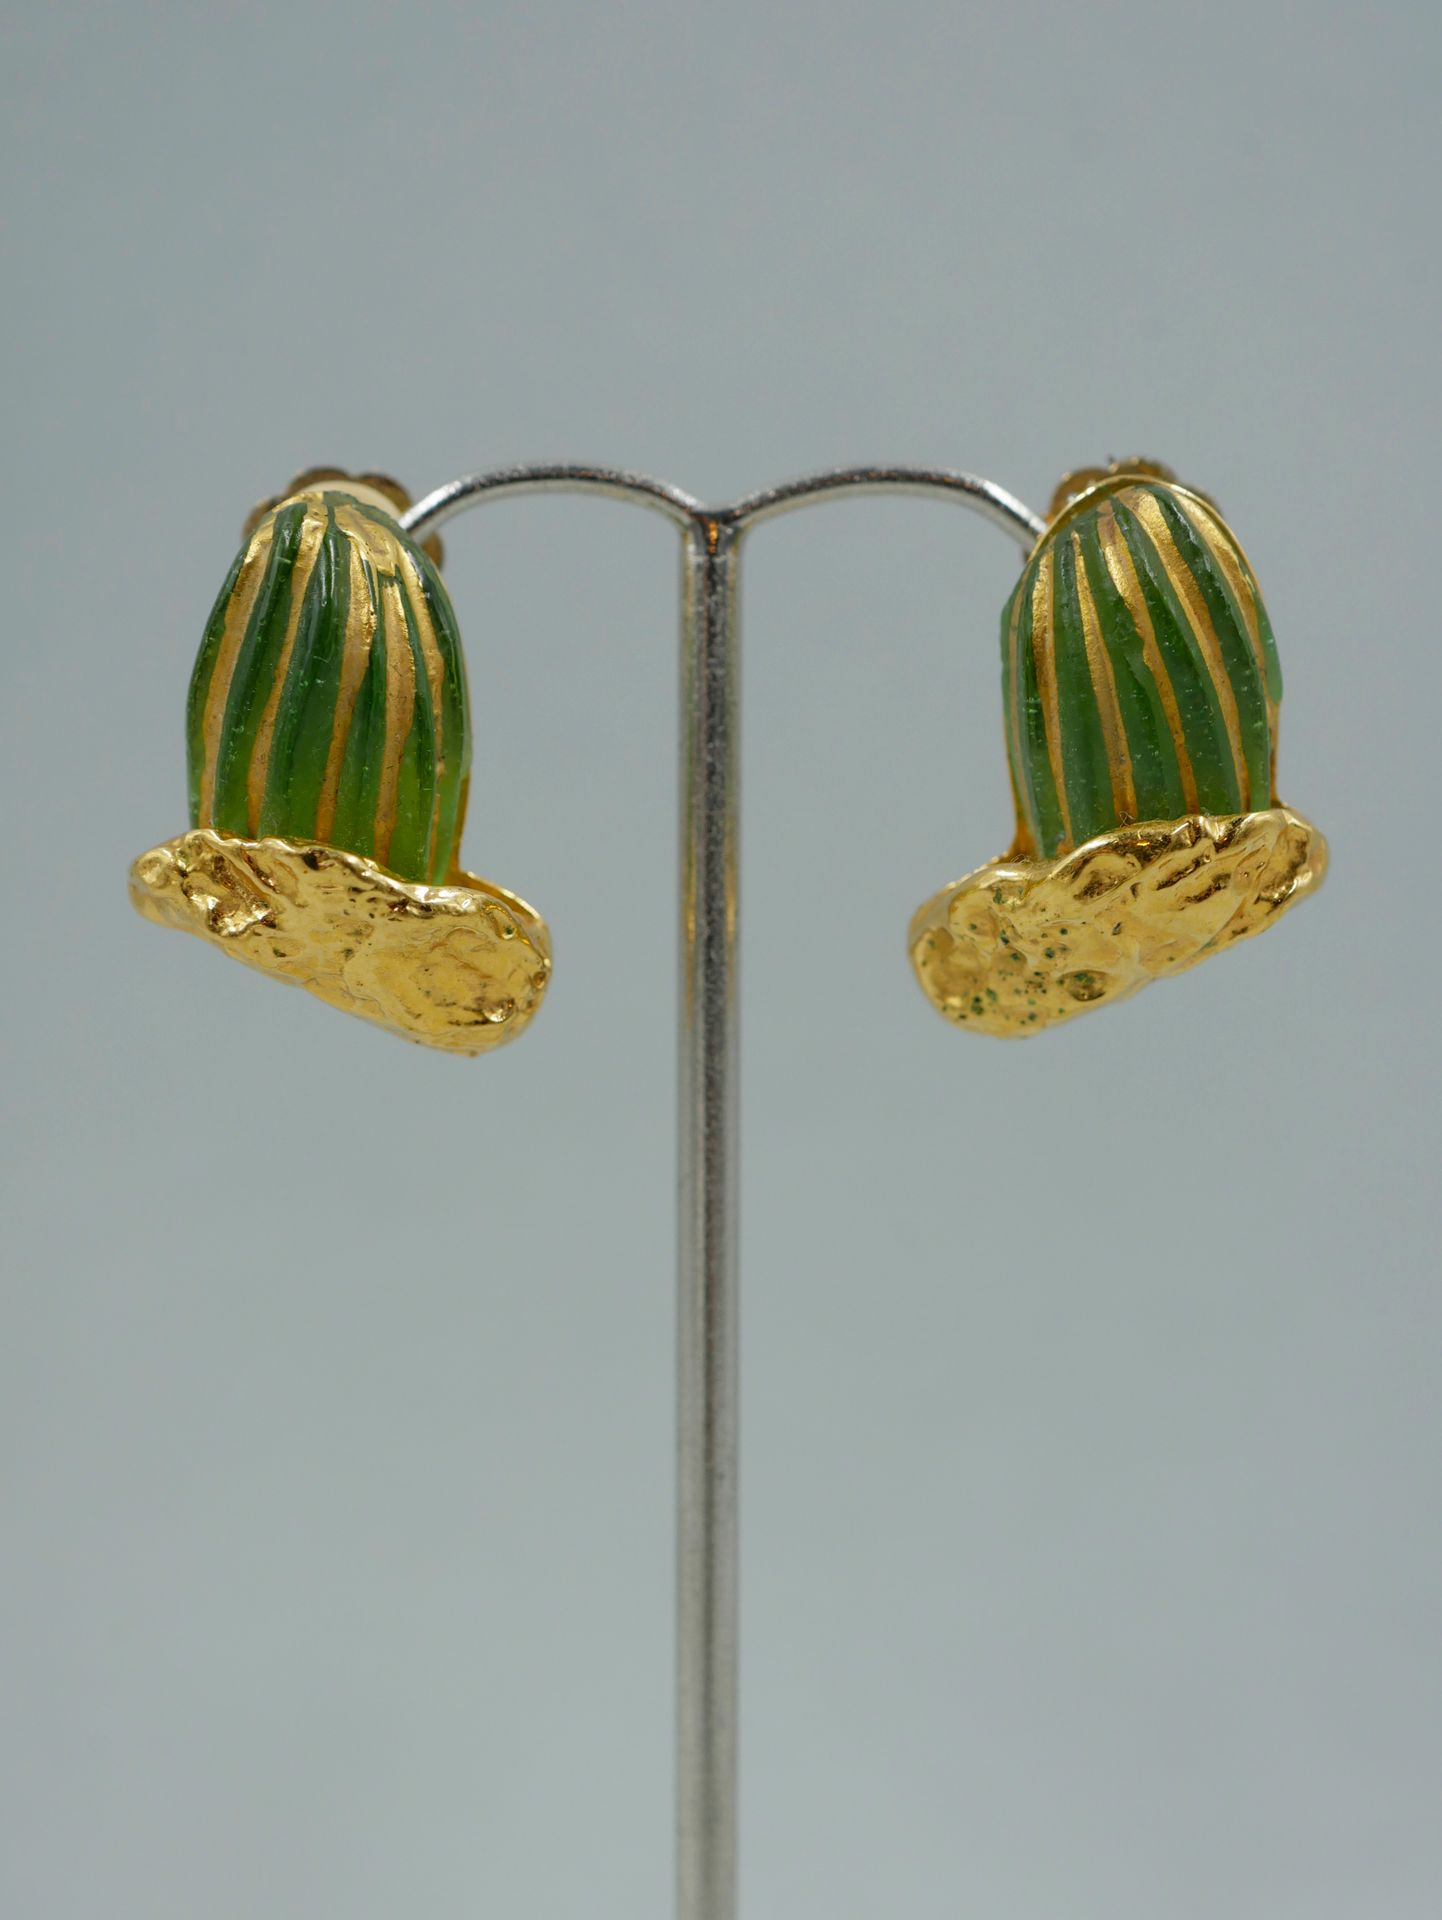 Null 希尔顿-麦克康尼科（1943-2018），代表法国DAUM公司。一对仙人掌形状的鎏金金属和玻璃膏耳环。签名。高2,5厘米。